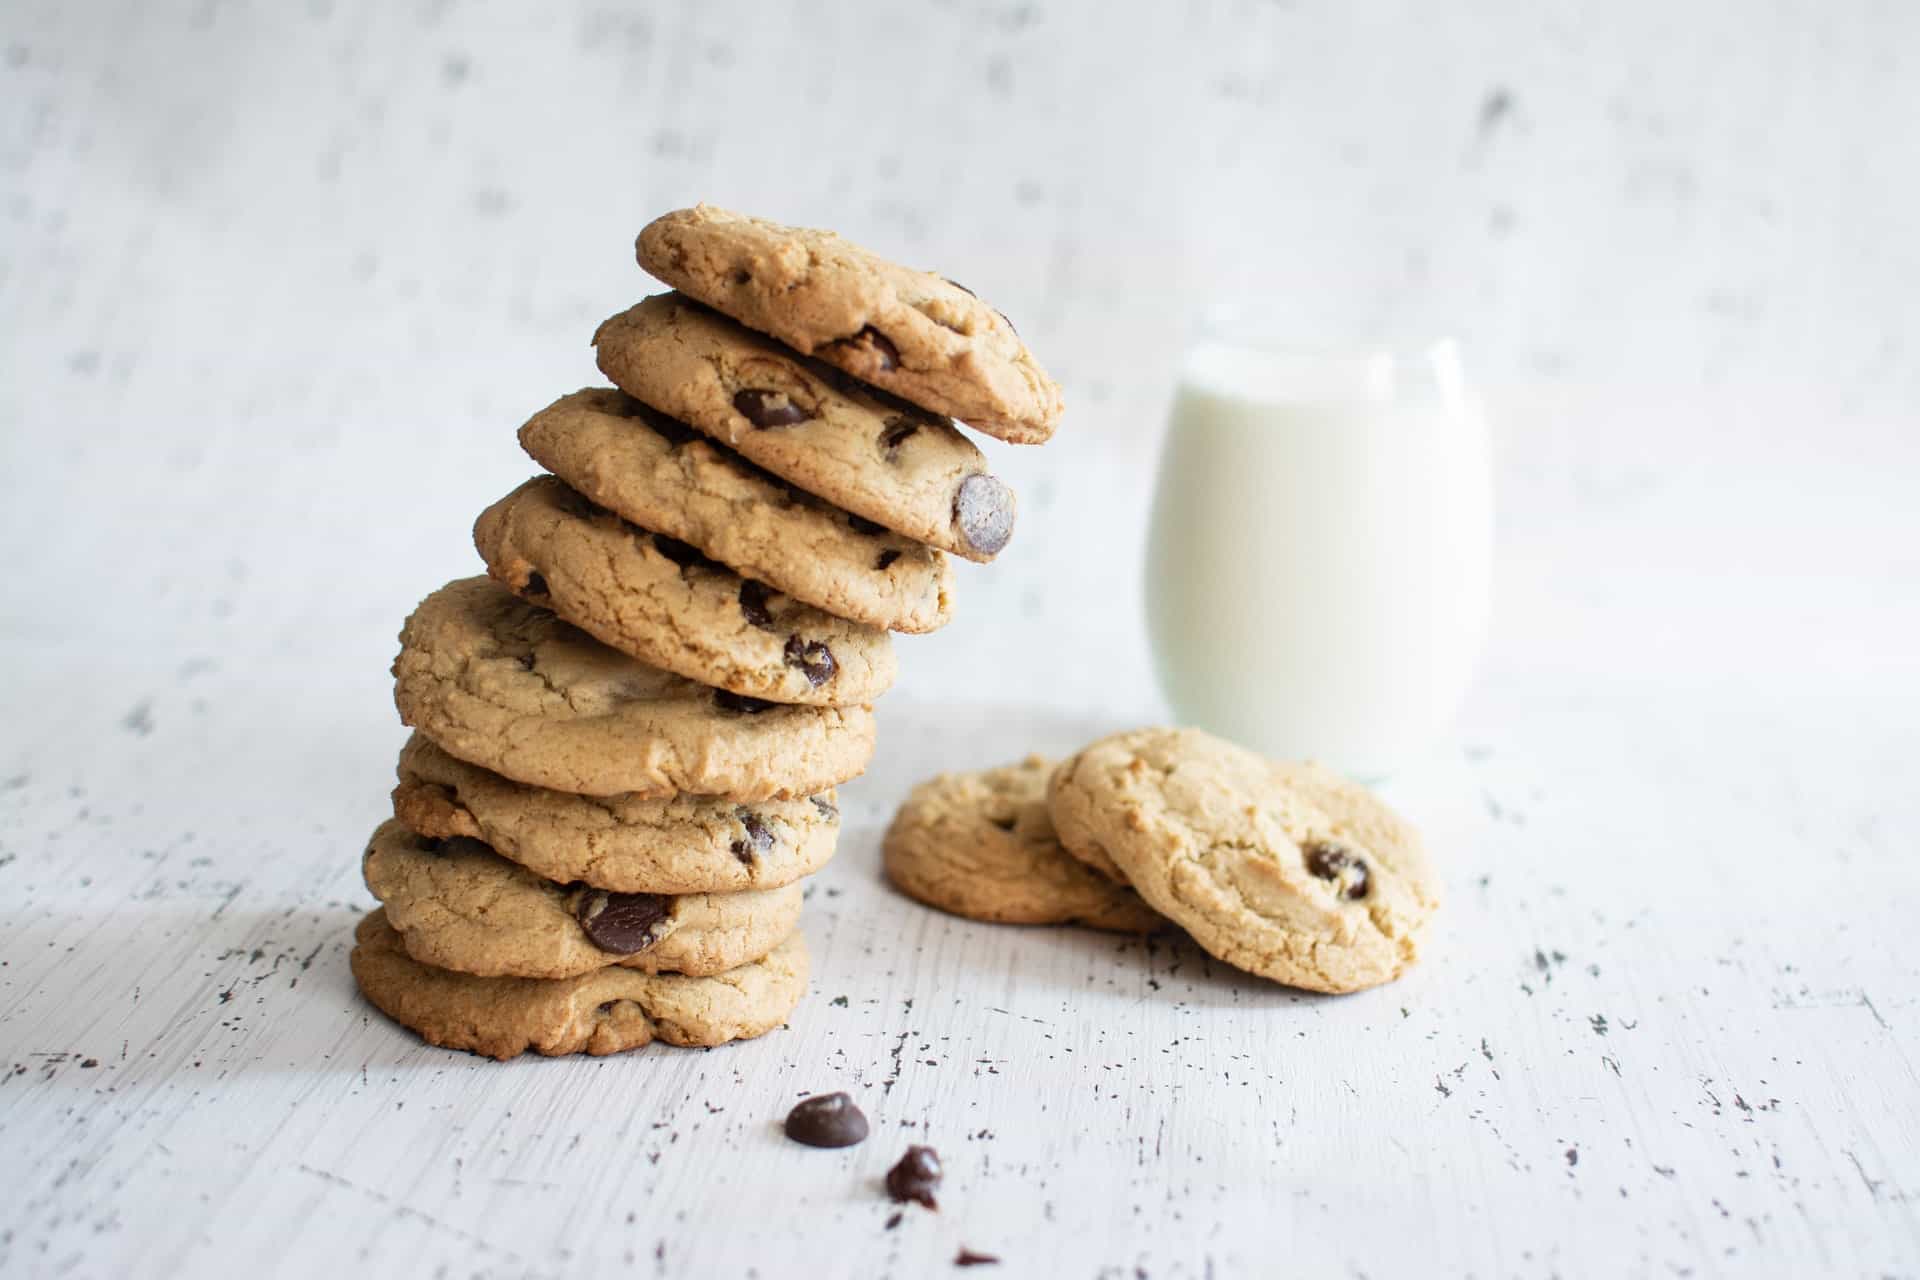 Chokoladecookies på et bord sammen med et glas mælk.